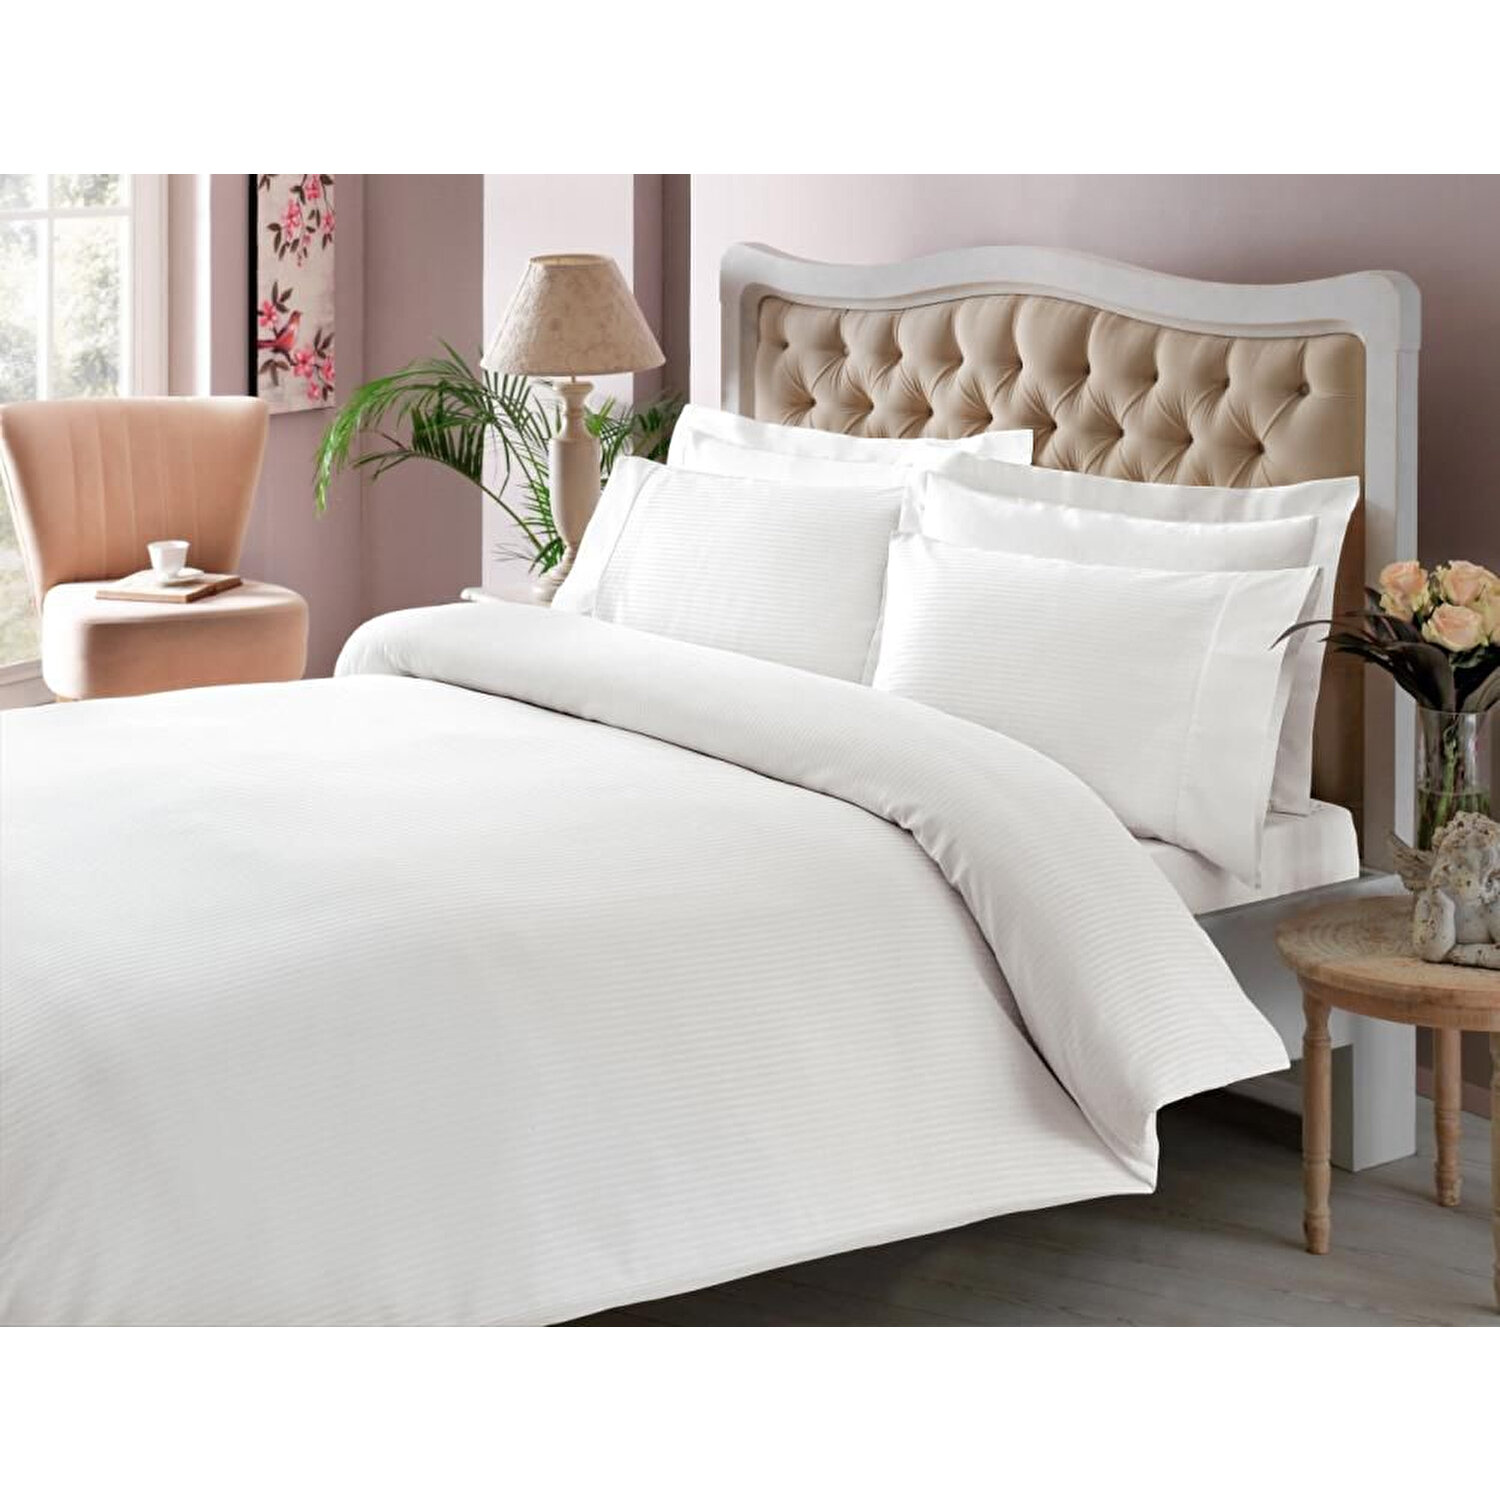 Комплект постельного белья Tac Premium Basic в полоску белого цвета комплект постельного белья tac premium basic stripe кремового цвета